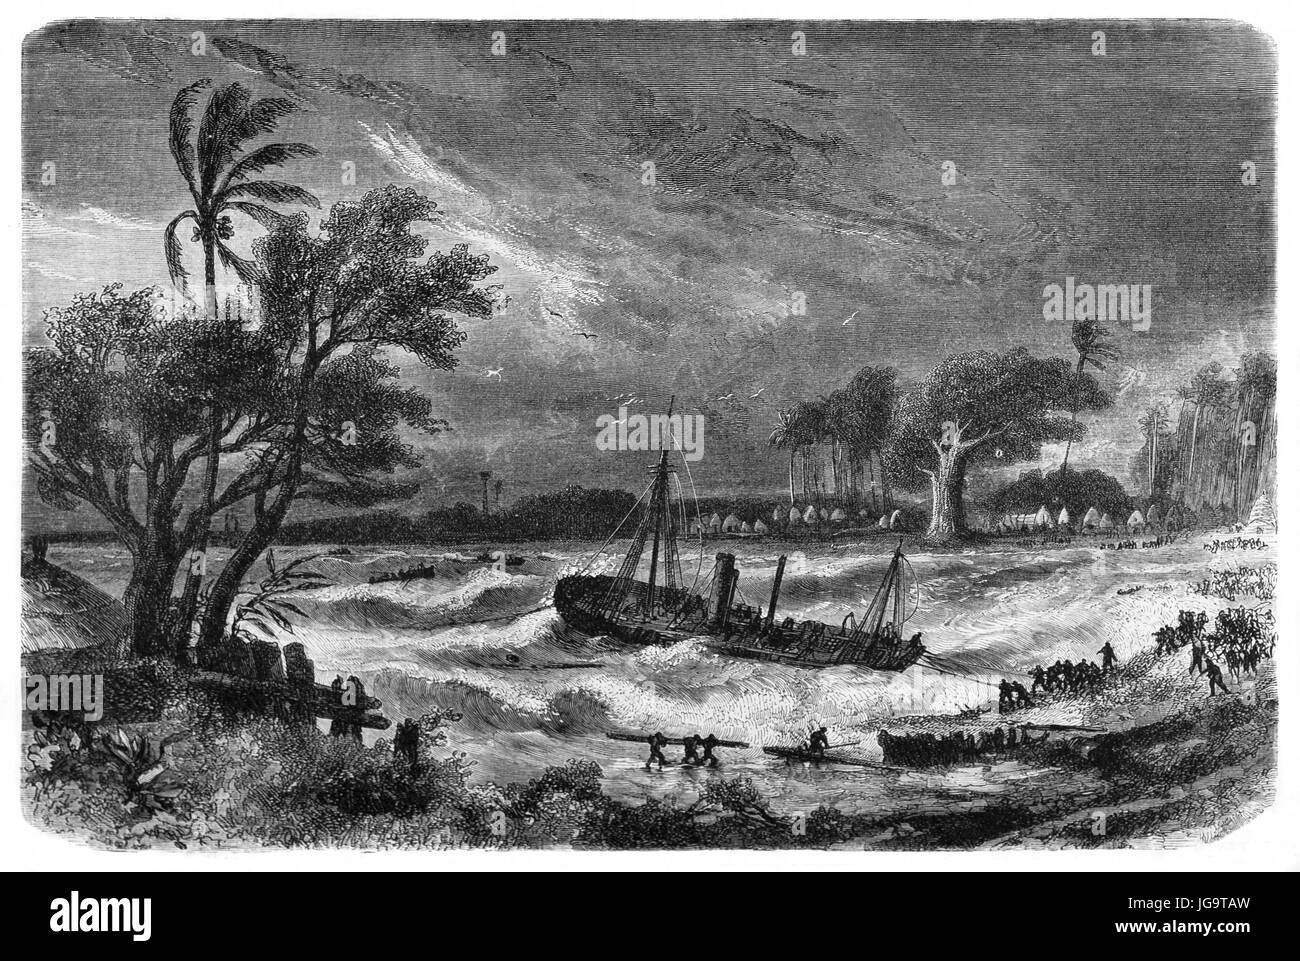 Navire en détresse au milieu d'une tempête sombre près de la côte africaine. Art de style gravure de tons gris anciens par Bérard, le Tour du monde, 1861 Banque D'Images